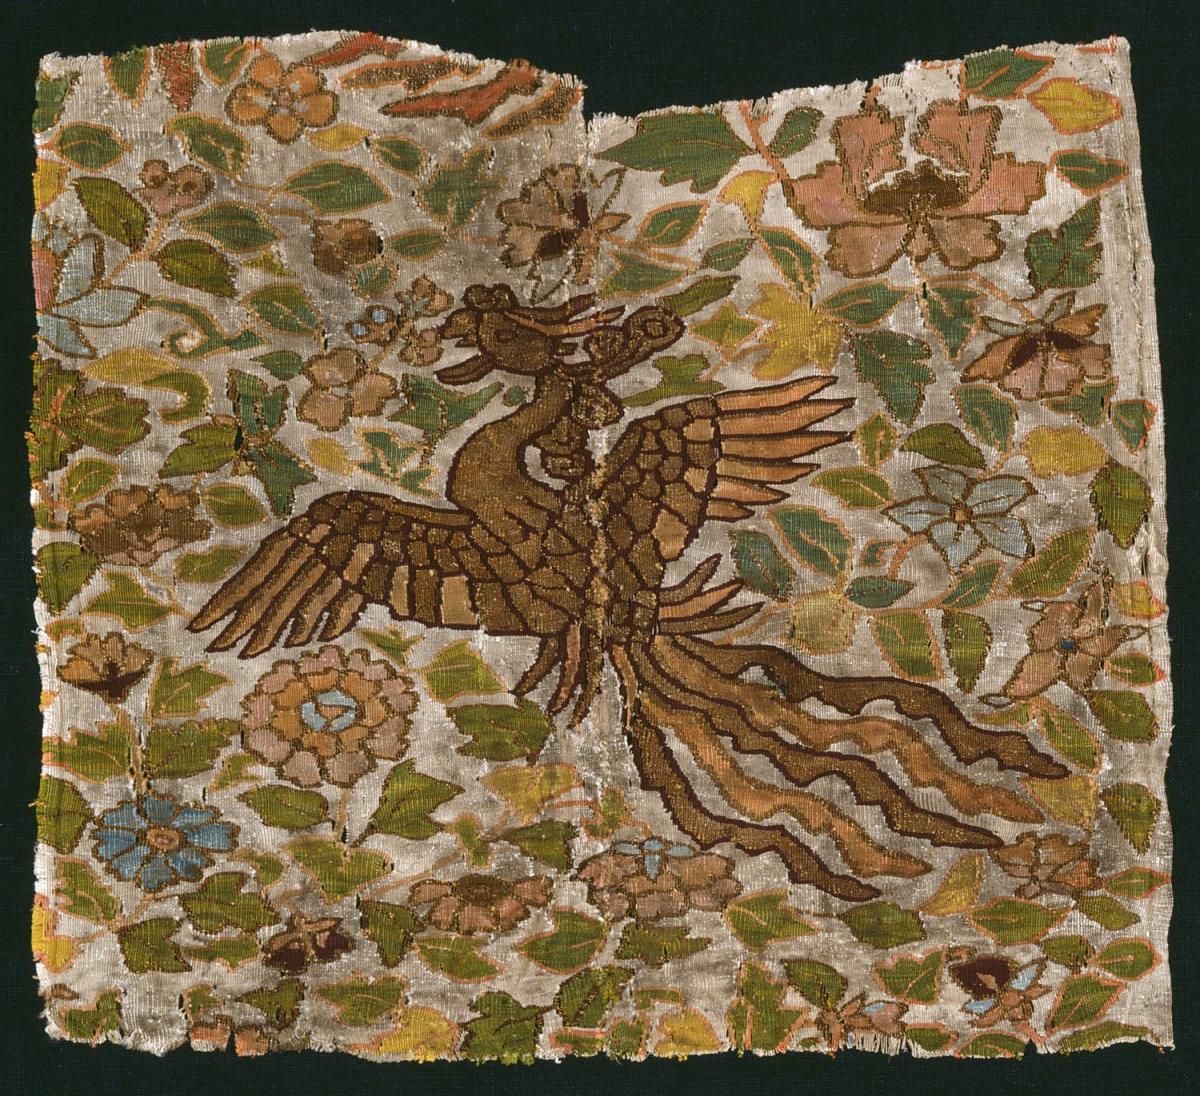 Wirkerei mit Phönix (Fenghuang) zwischen Blumen, Ident.-Nr. 1994-6, Museum für Asiatische Kunst, Staatliche Museen zu Berlin